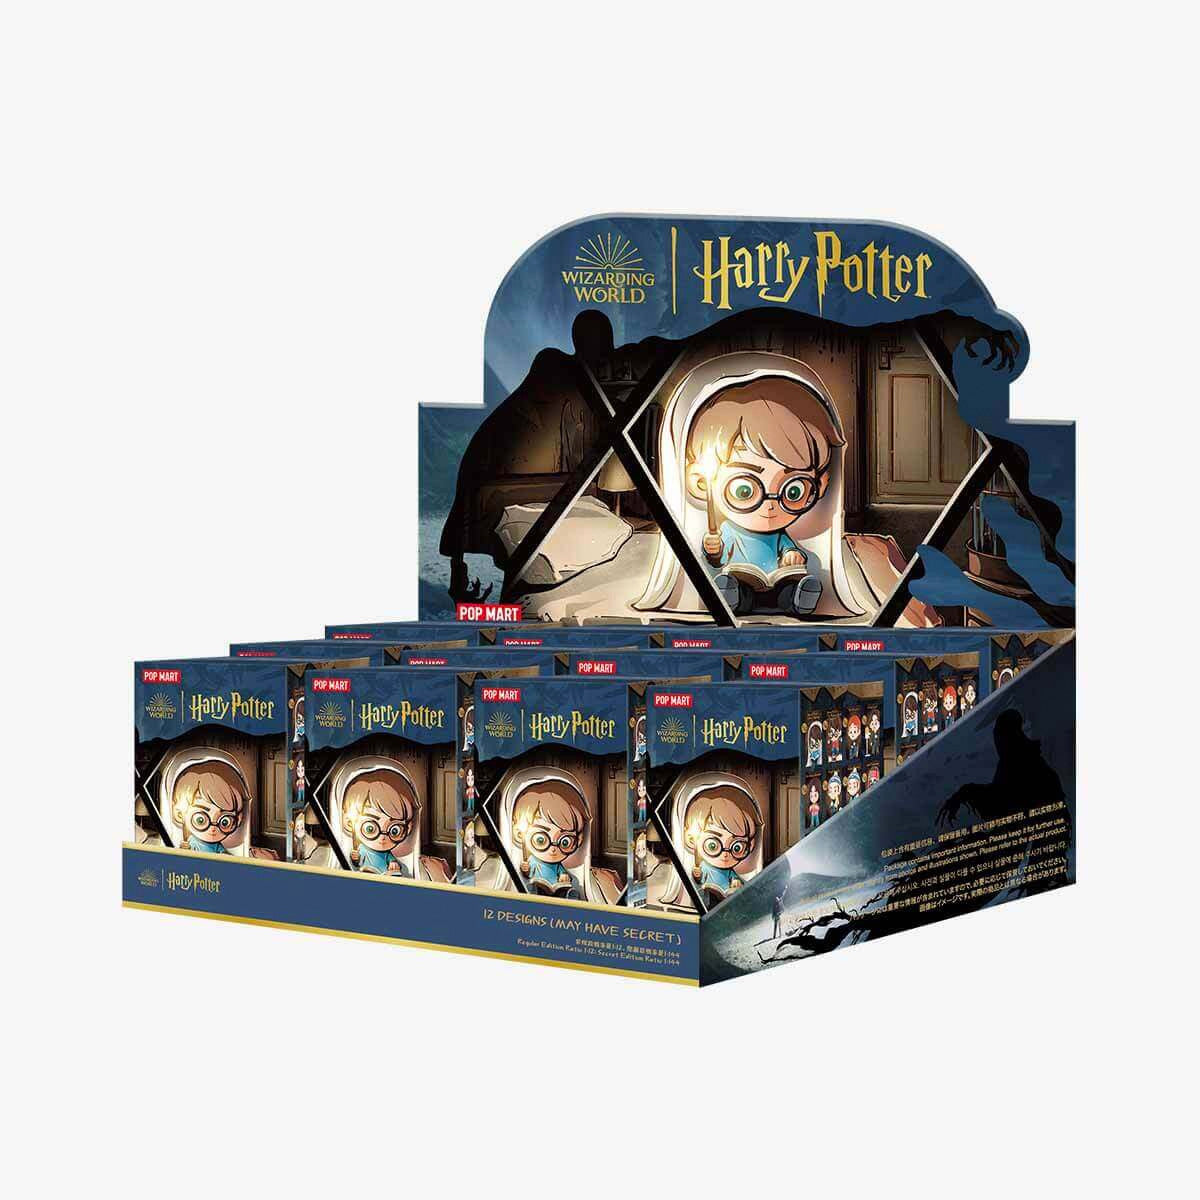 【Restock】Pop Mart: Harry Potter and the Prisoner of Azkaban Series Blind Box Random Style